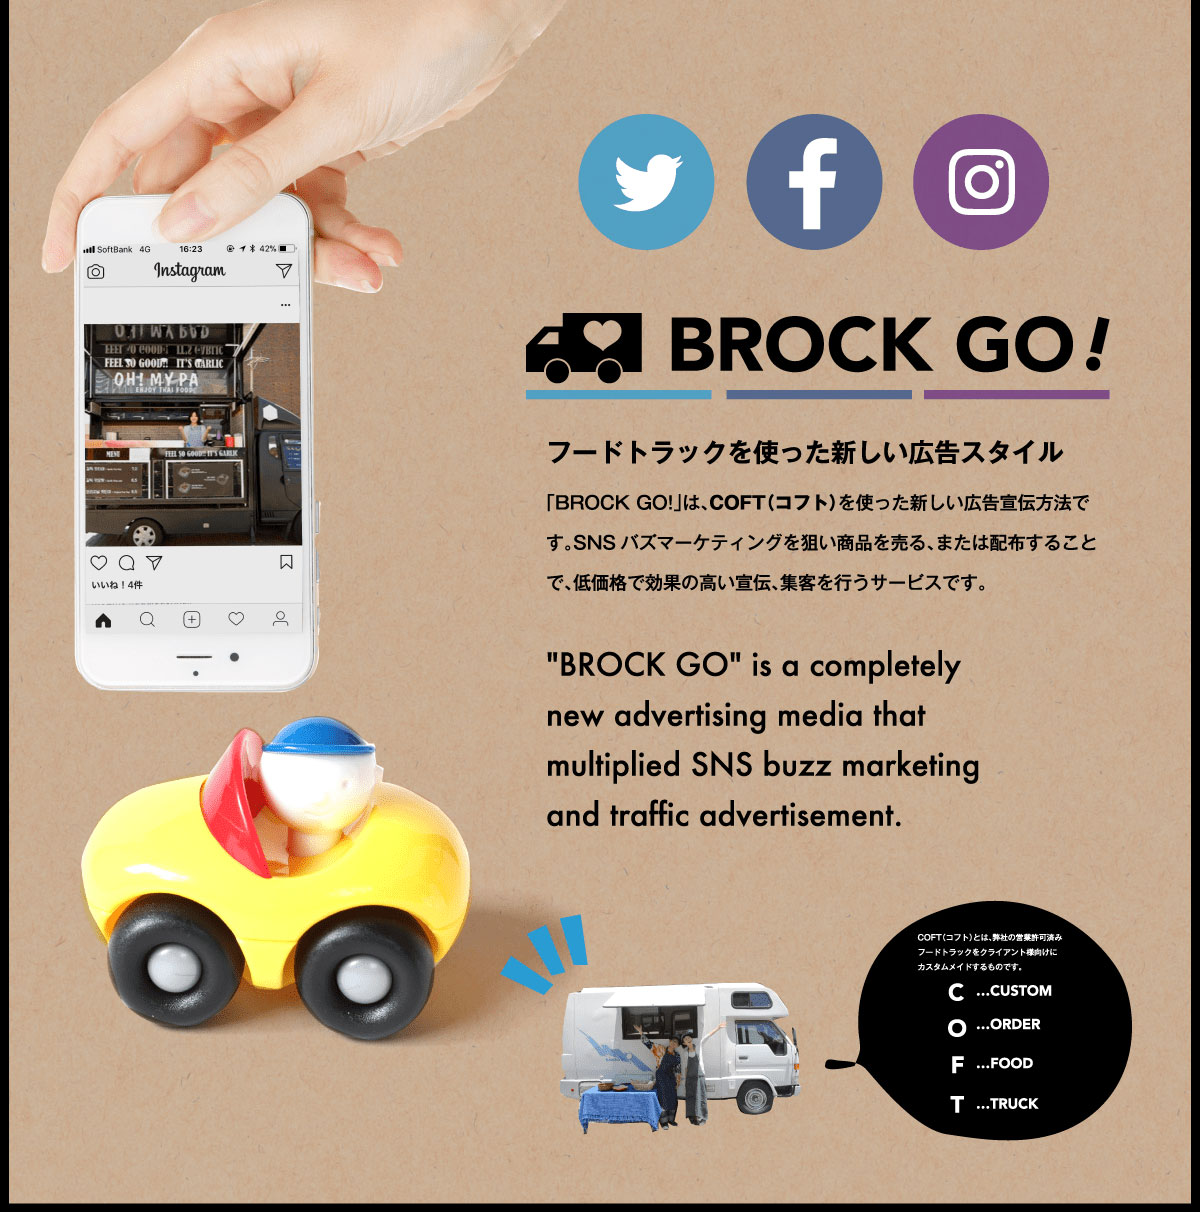 BROCK GO!フードトラックを使った新しい広告スタイル